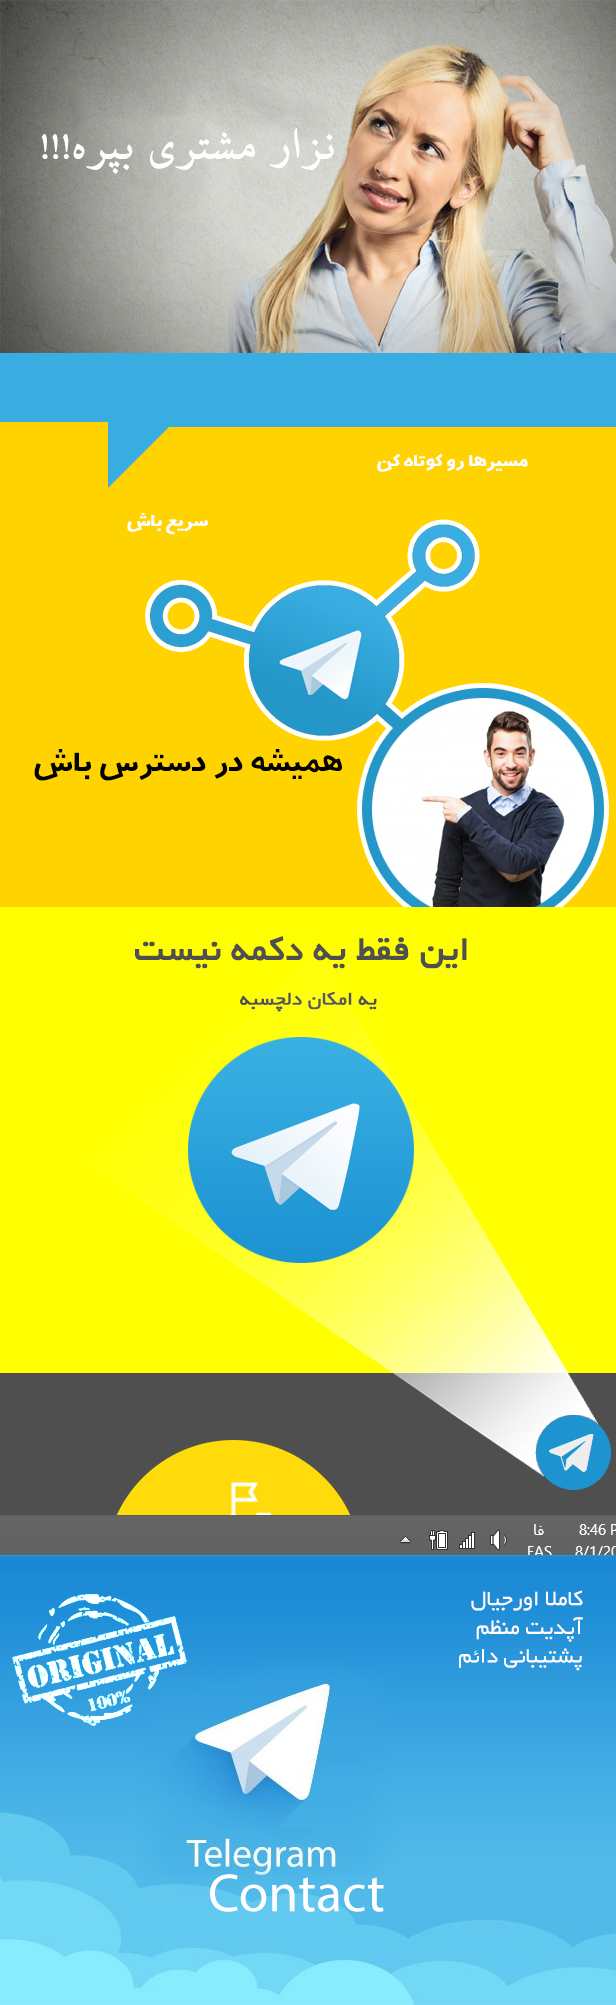 افزونه Telegram Contact Button | افزونه وردپرس دکمه تماس تلگرام